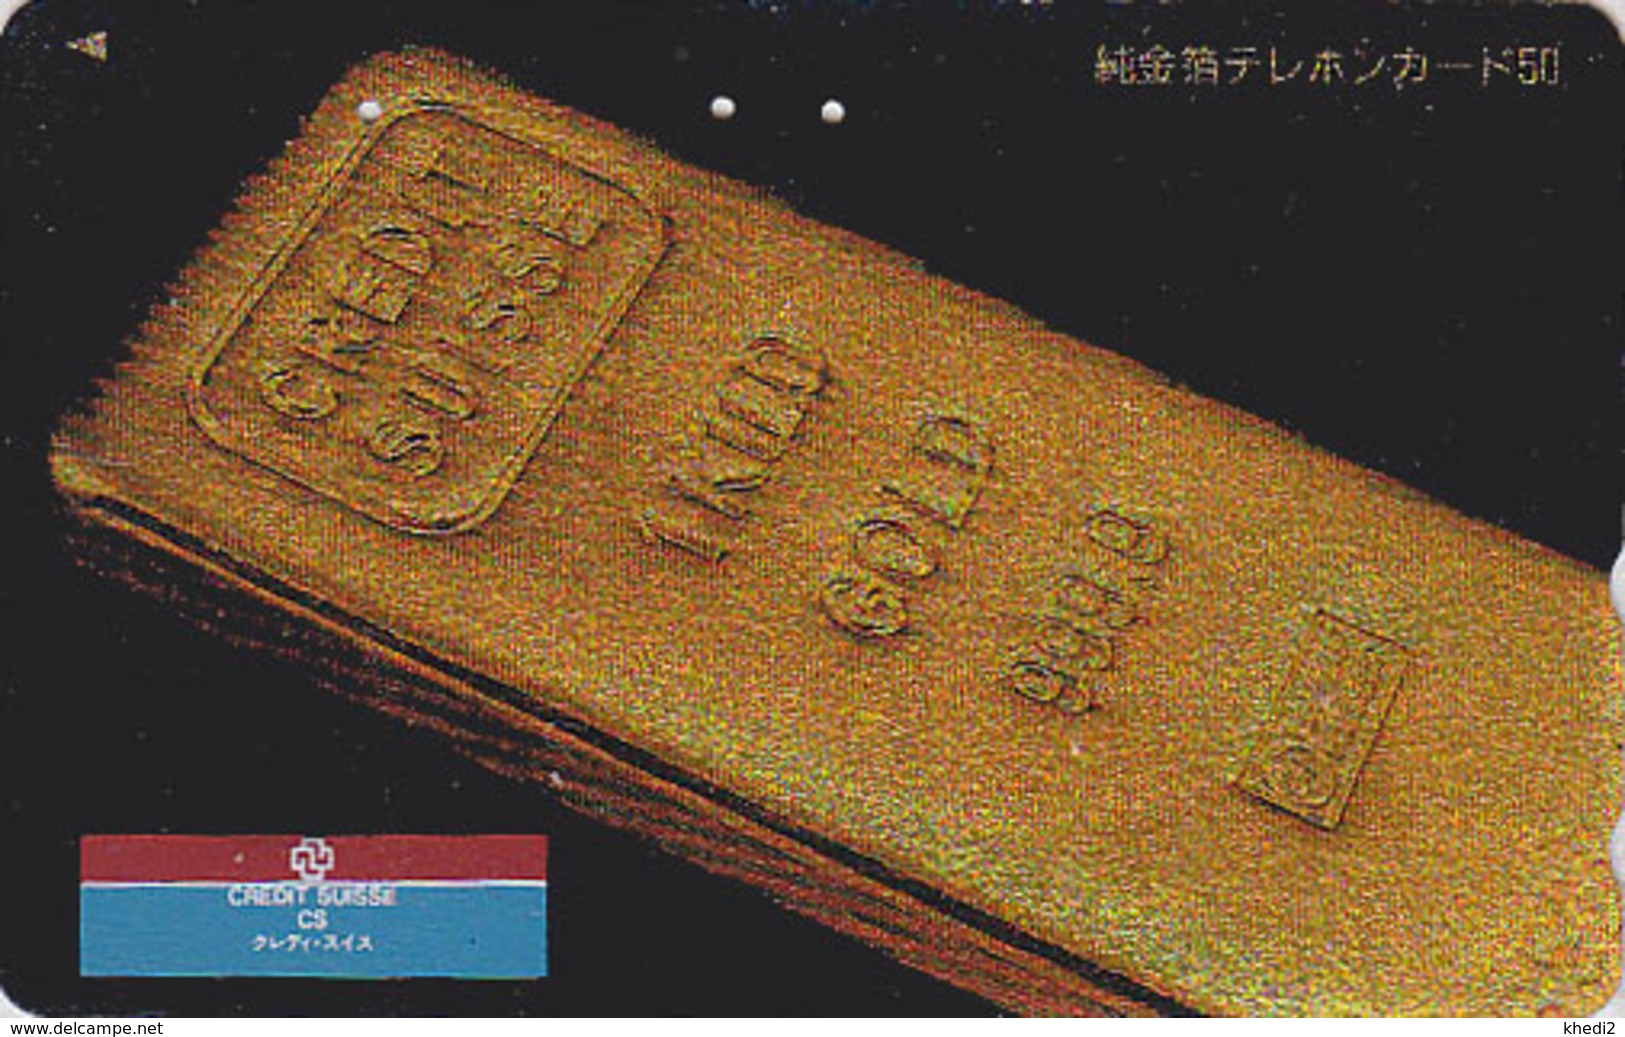 RARE Télécarte Japon / 110-007 - CREDIT SUISSE / Lingot D'or - SWITZERLAND Swiss Bank Gold Japan Phonecard - 102 - Francobolli & Monete